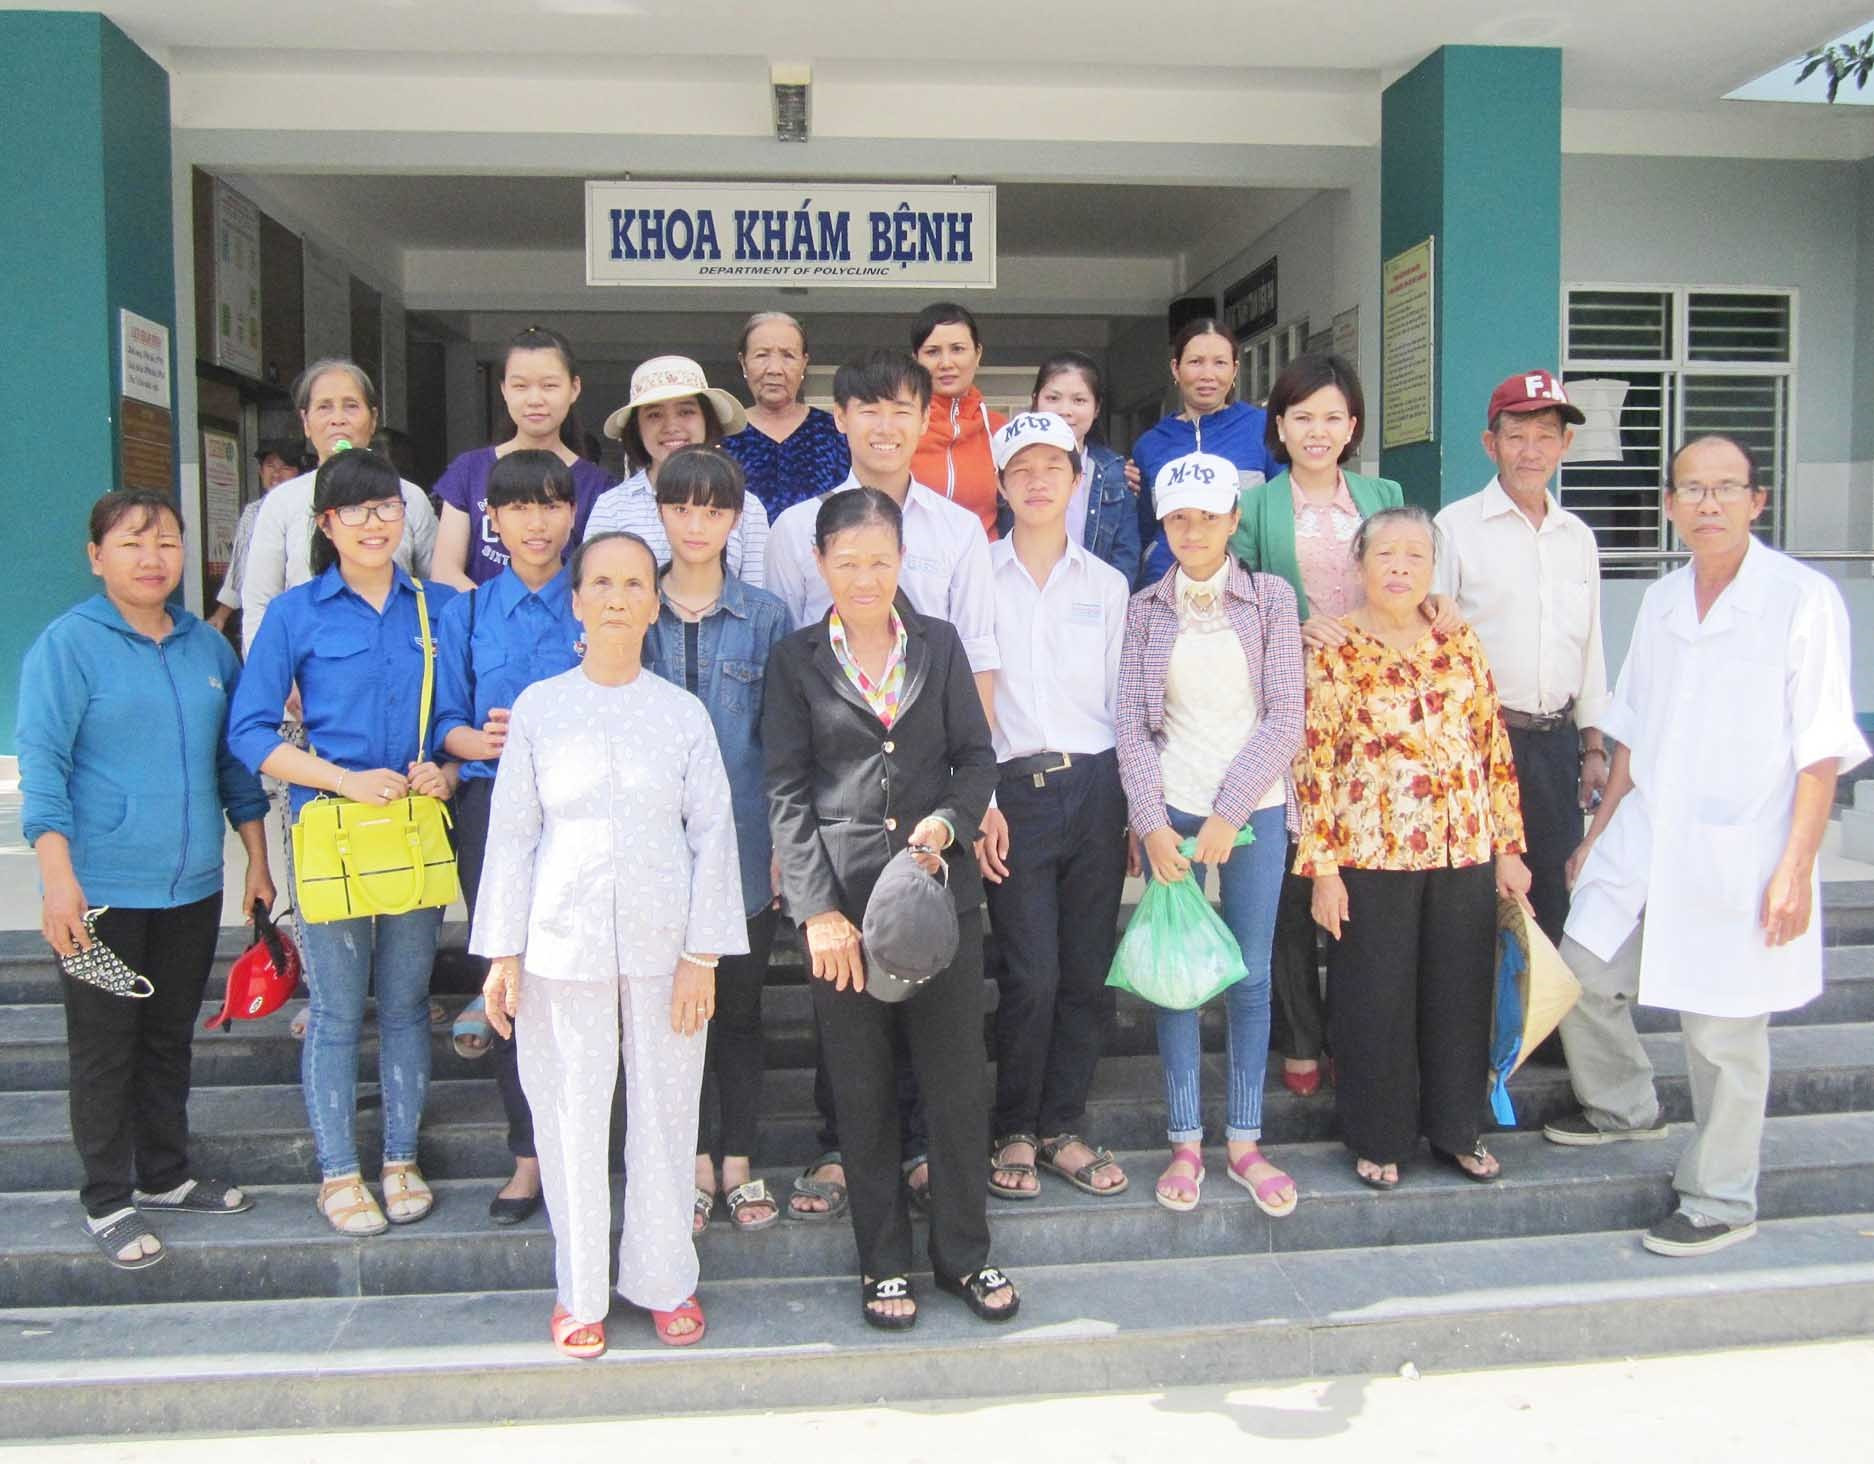 Tiểu thương chợ Điện Phương tổ chức phát 500 suất cơm tại Bệnh viện Đa khoa khu vực Quảng Nam (đóng tại thị xã Điện Bàn). Ảnh: N.T